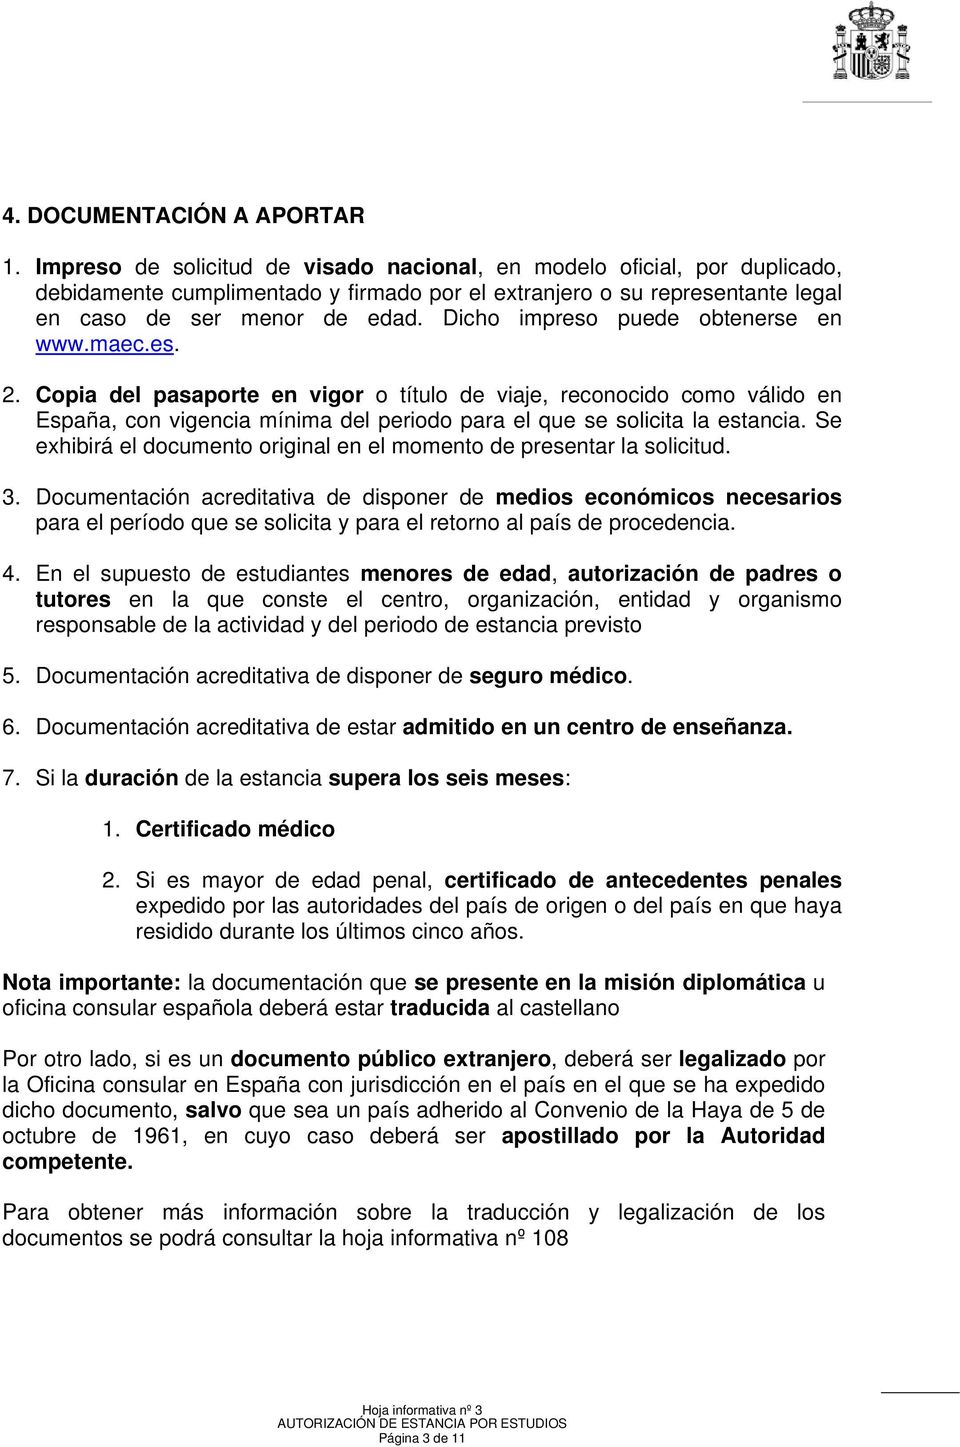 Dicho impreso puede obtenerse en www.maec.es. 2. Copia del pasaporte en vigor o título de viaje, reconocido como válido en España, con vigencia mínima del periodo para el que se solicita la estancia.